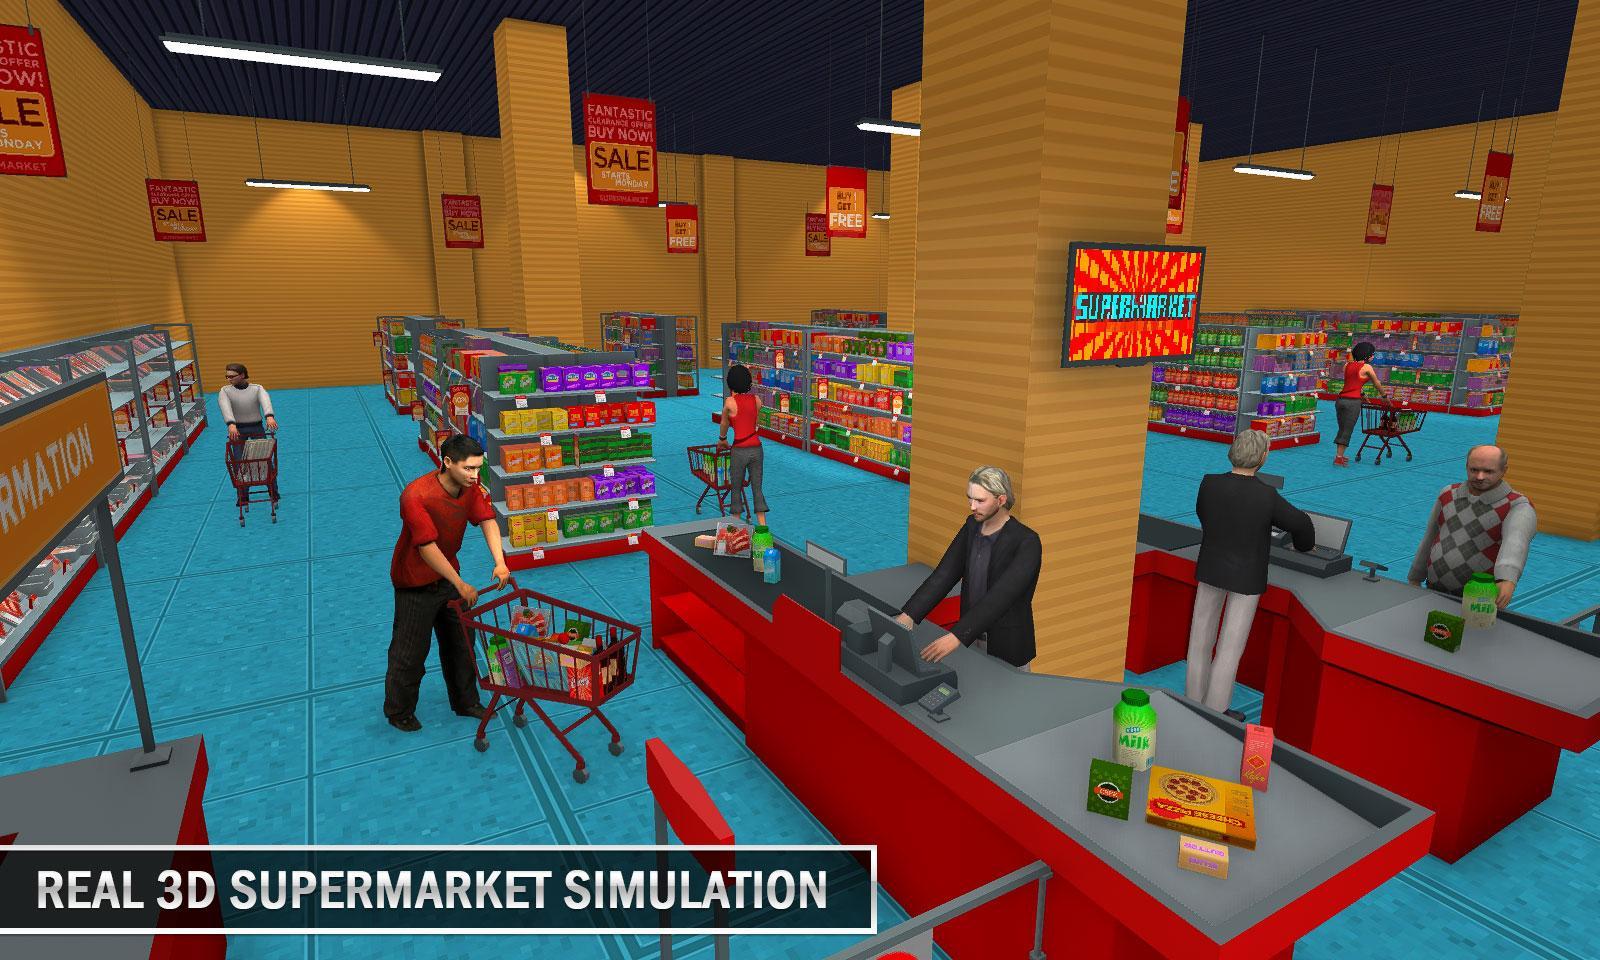 Супермаркет симулятор игра новая. Игра продуктовый магазин. Мой супермаркет игра. Игры на тему магазины и здания. Супермаркет симулятор с улицы.